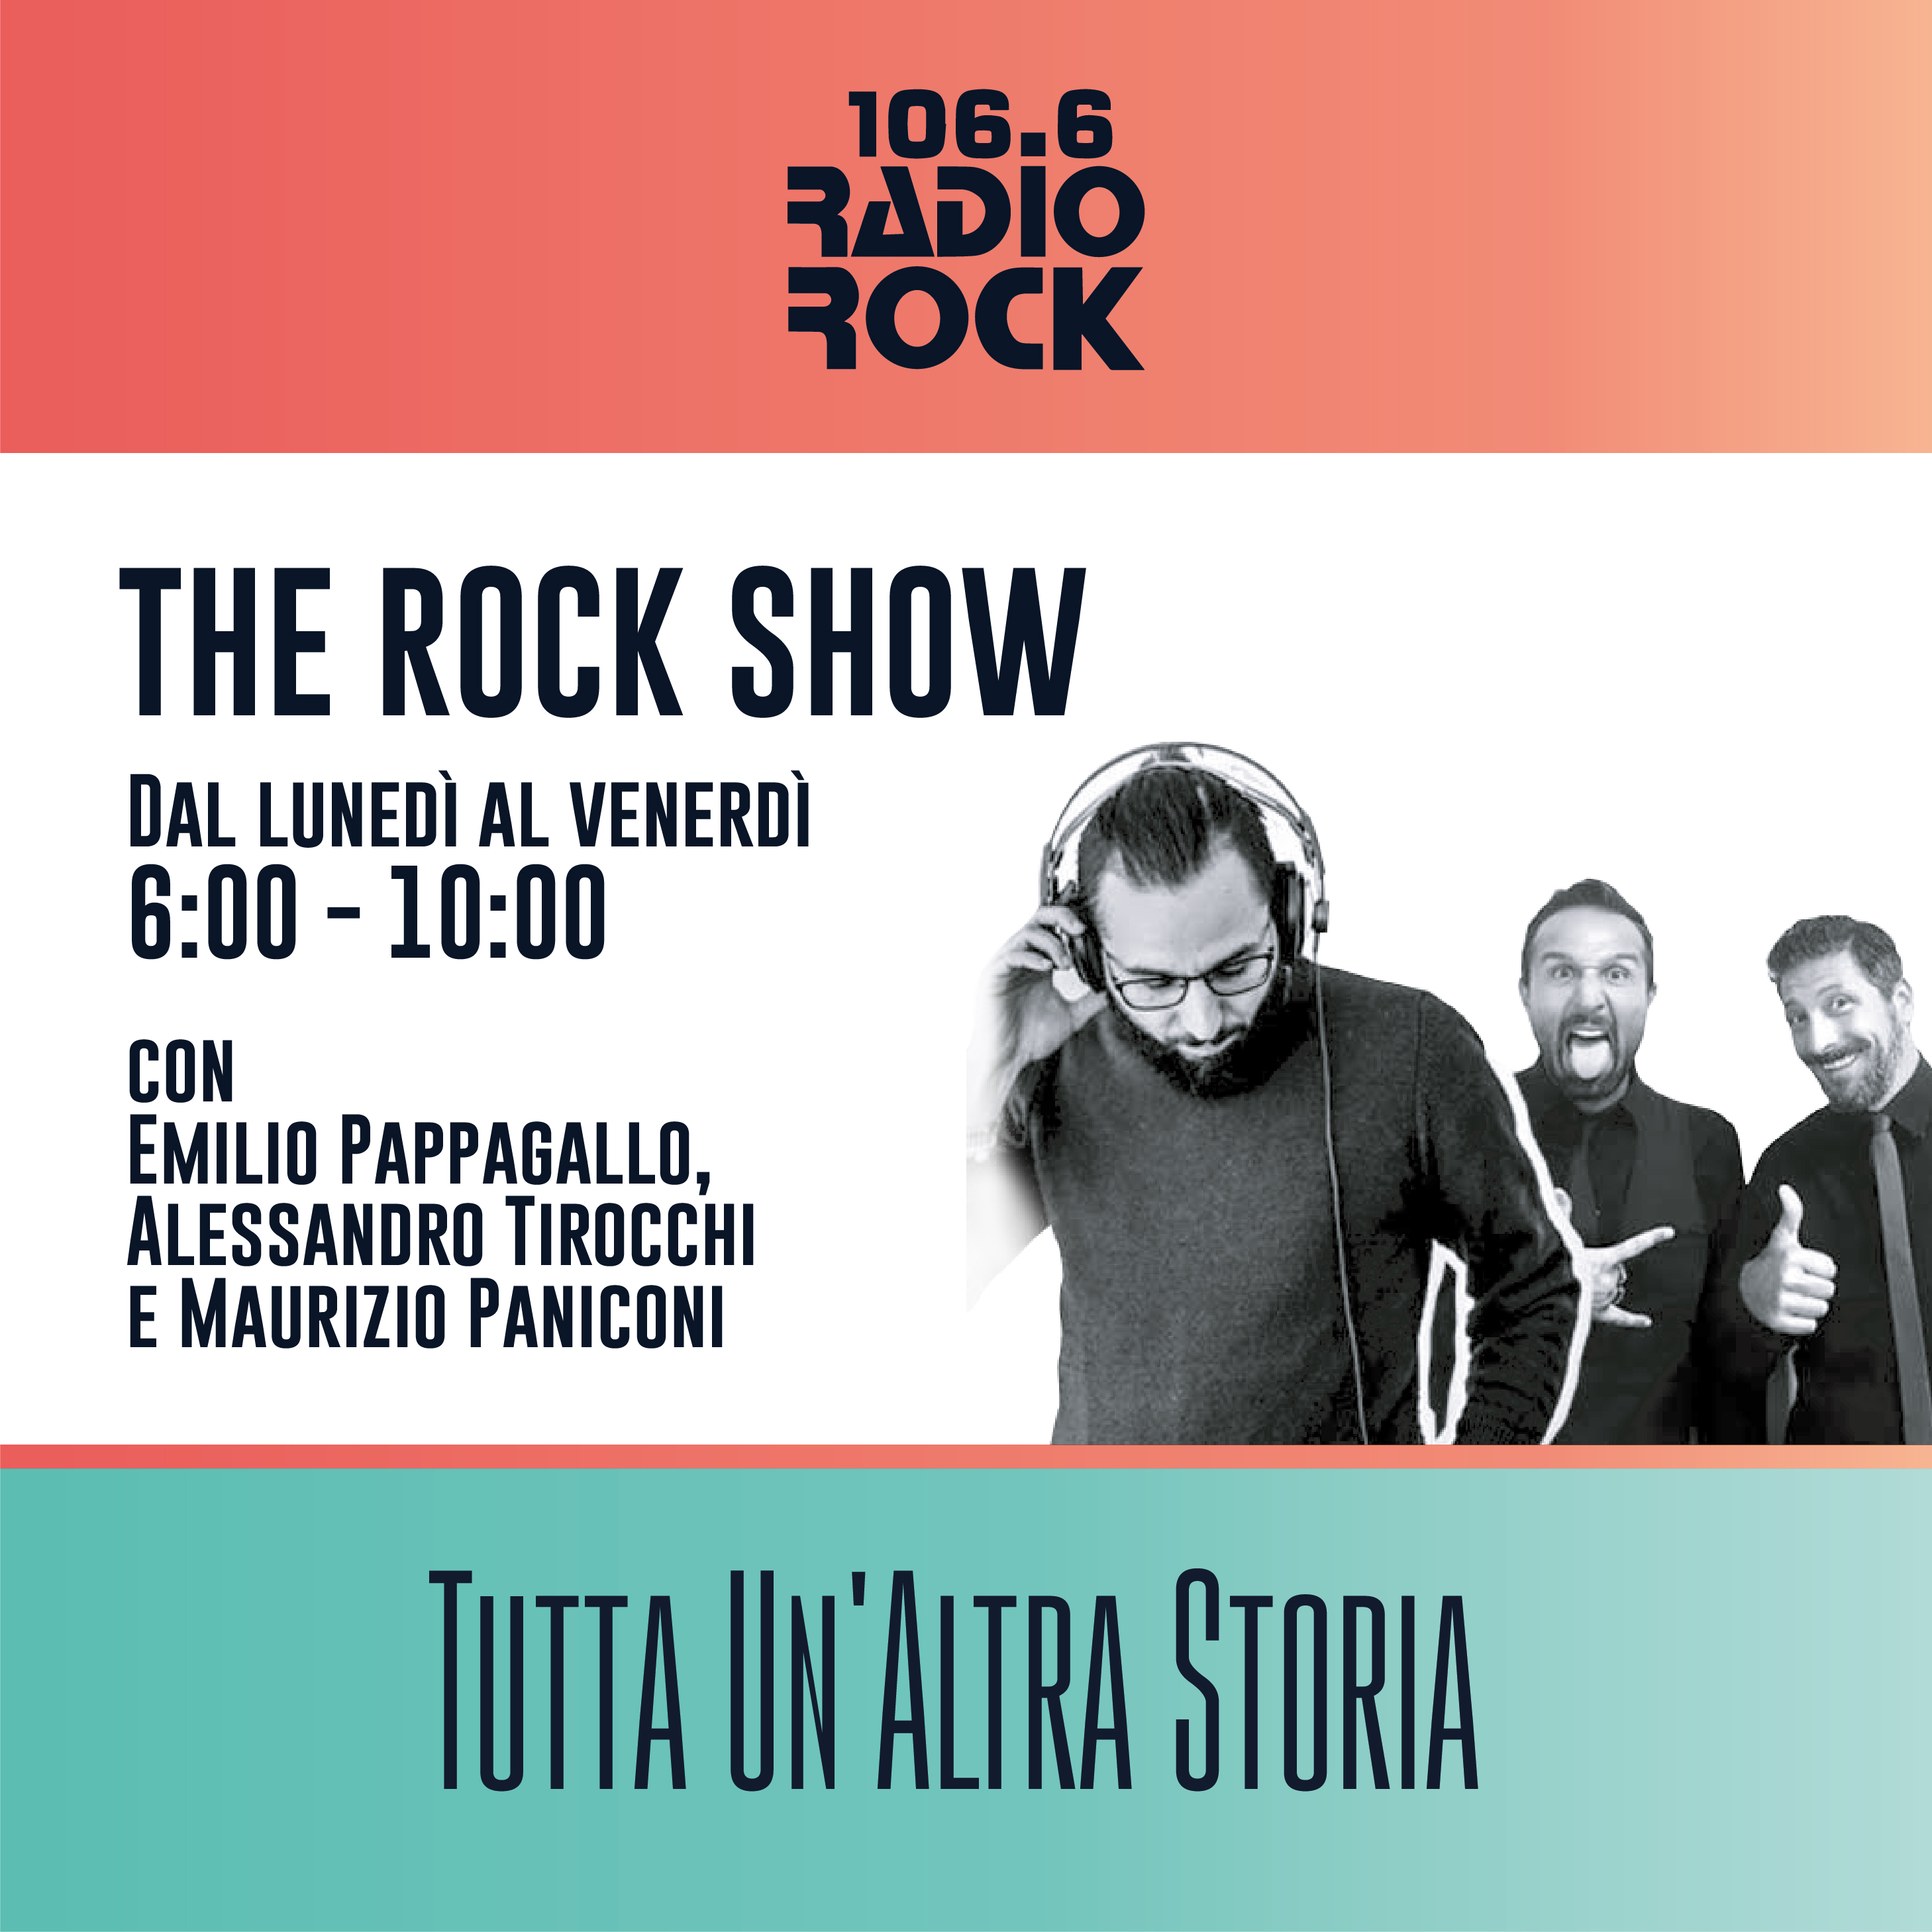 The Rock Show: Tutti amano la nuova dei Bon Jovi (29-10-20)